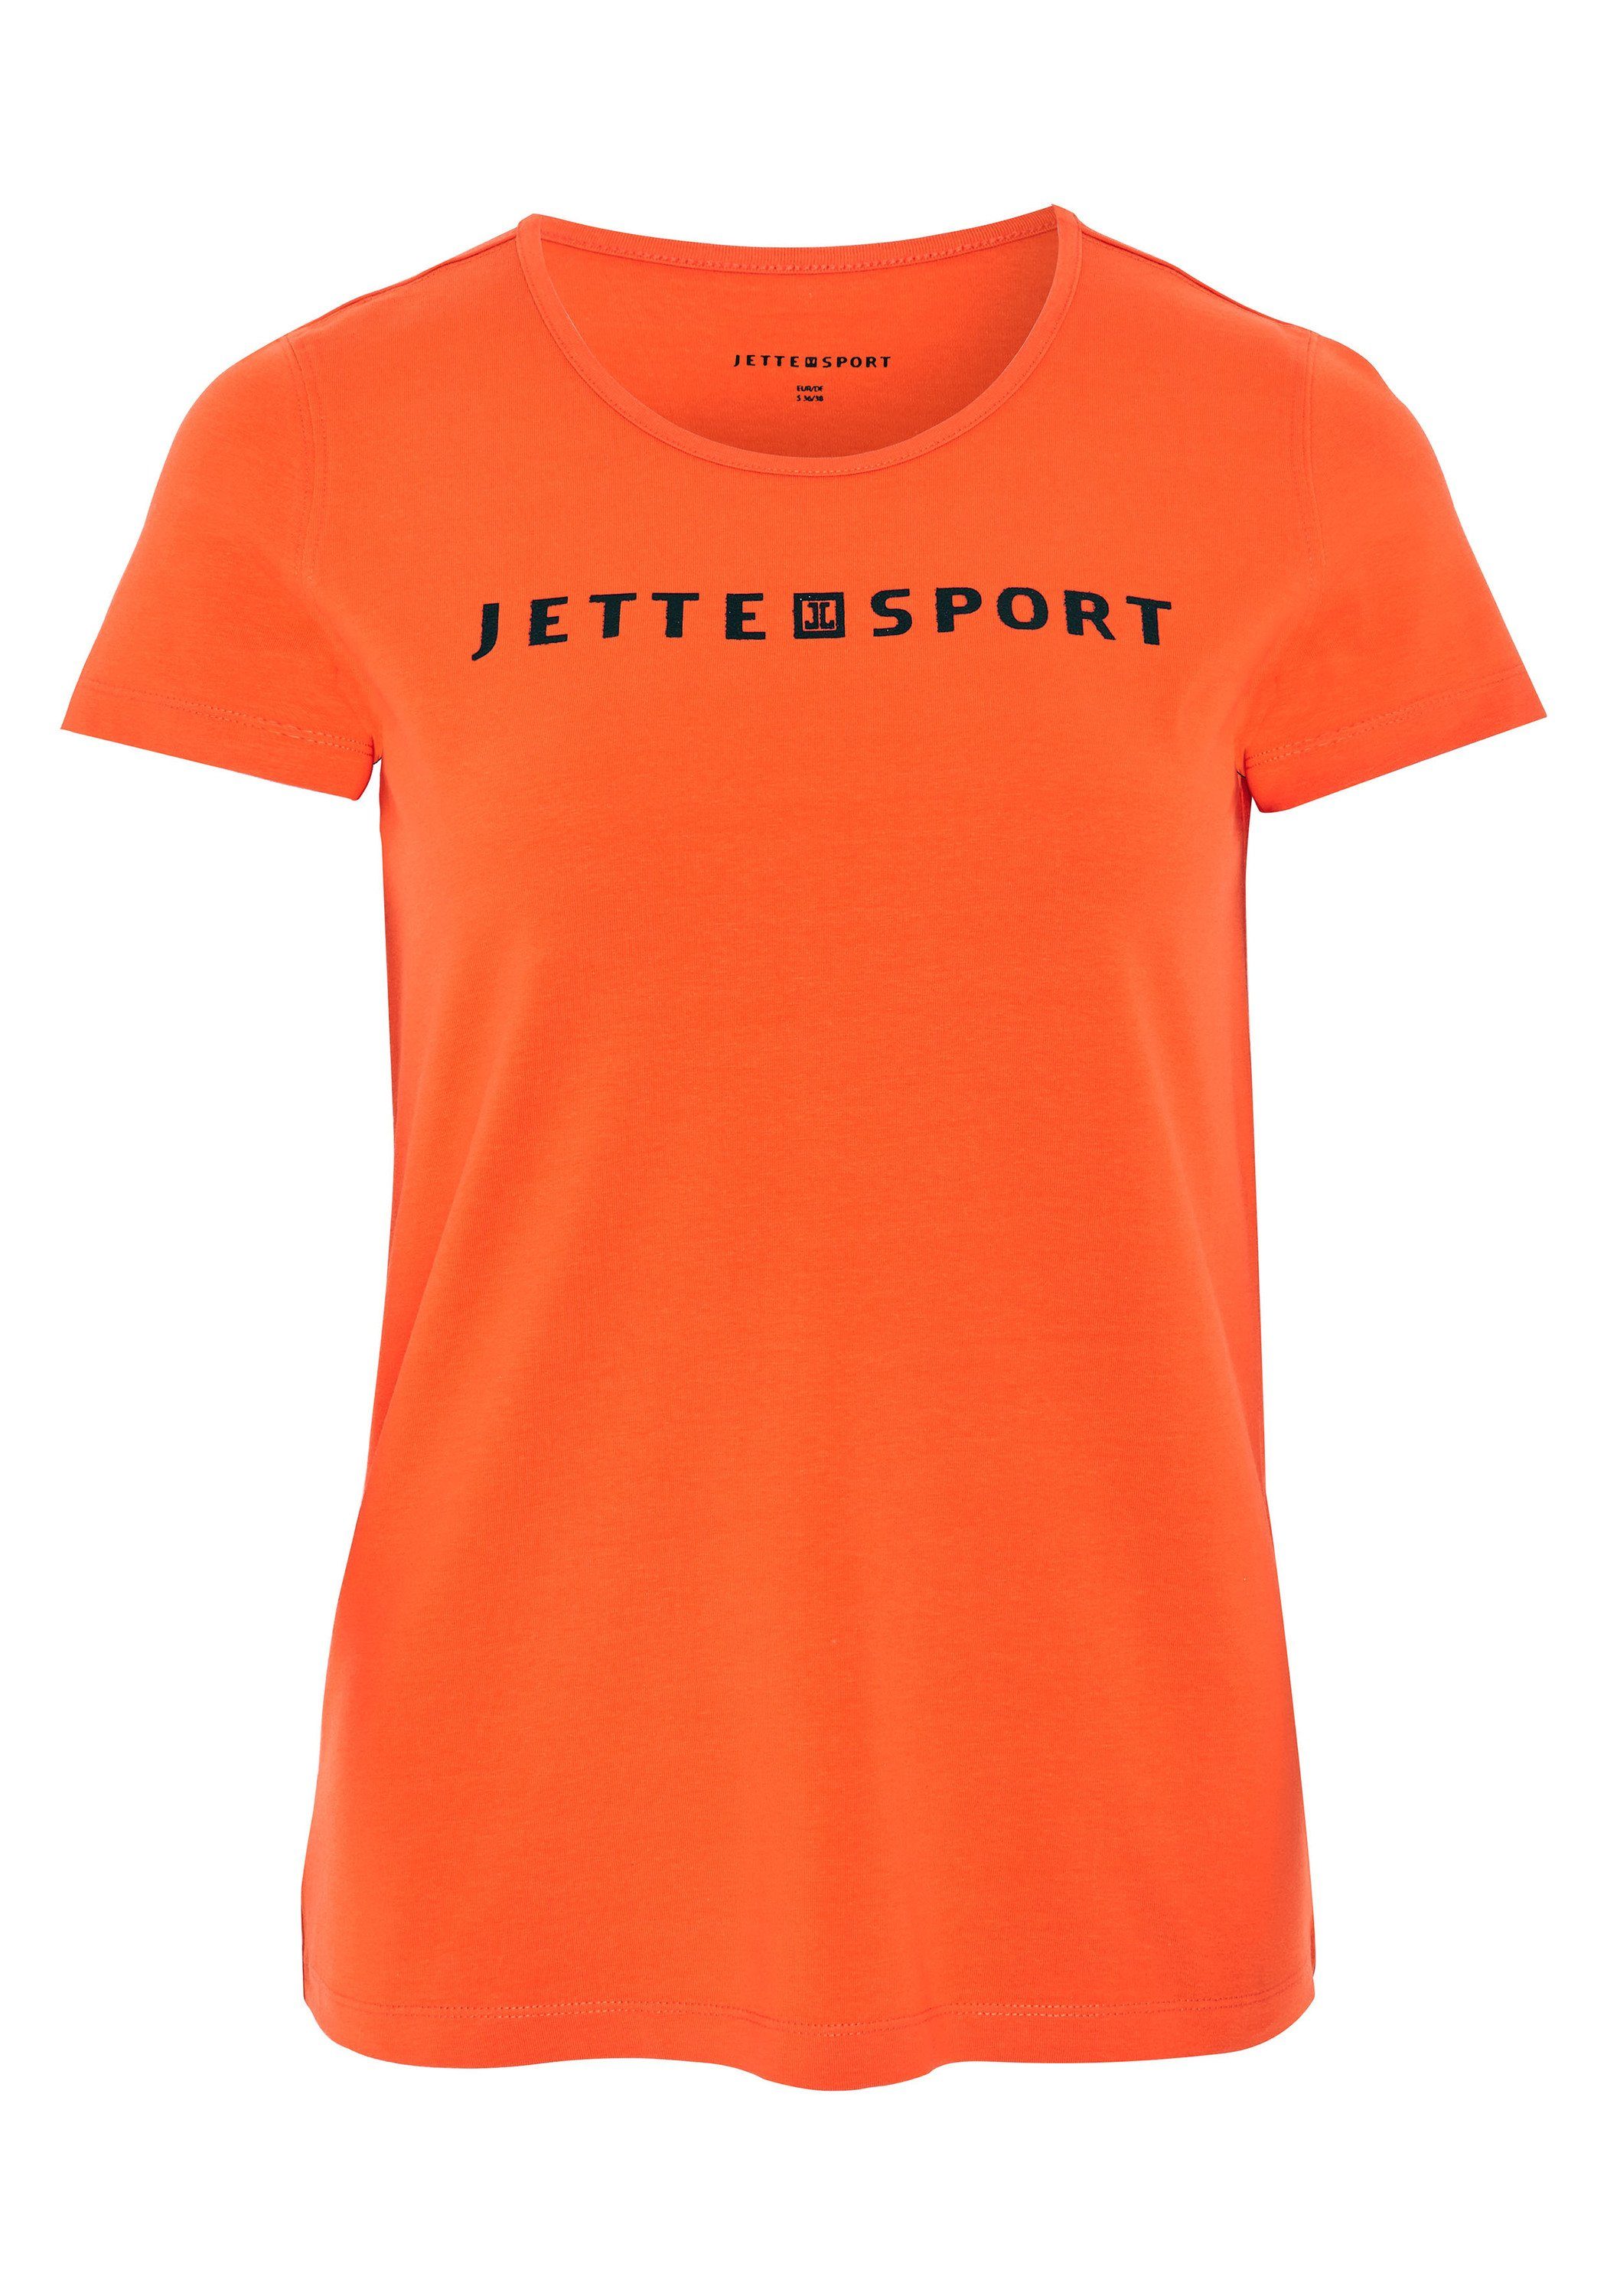 JETTE SPORT Print-Shirt mit Label-Print 17-1462 Flame